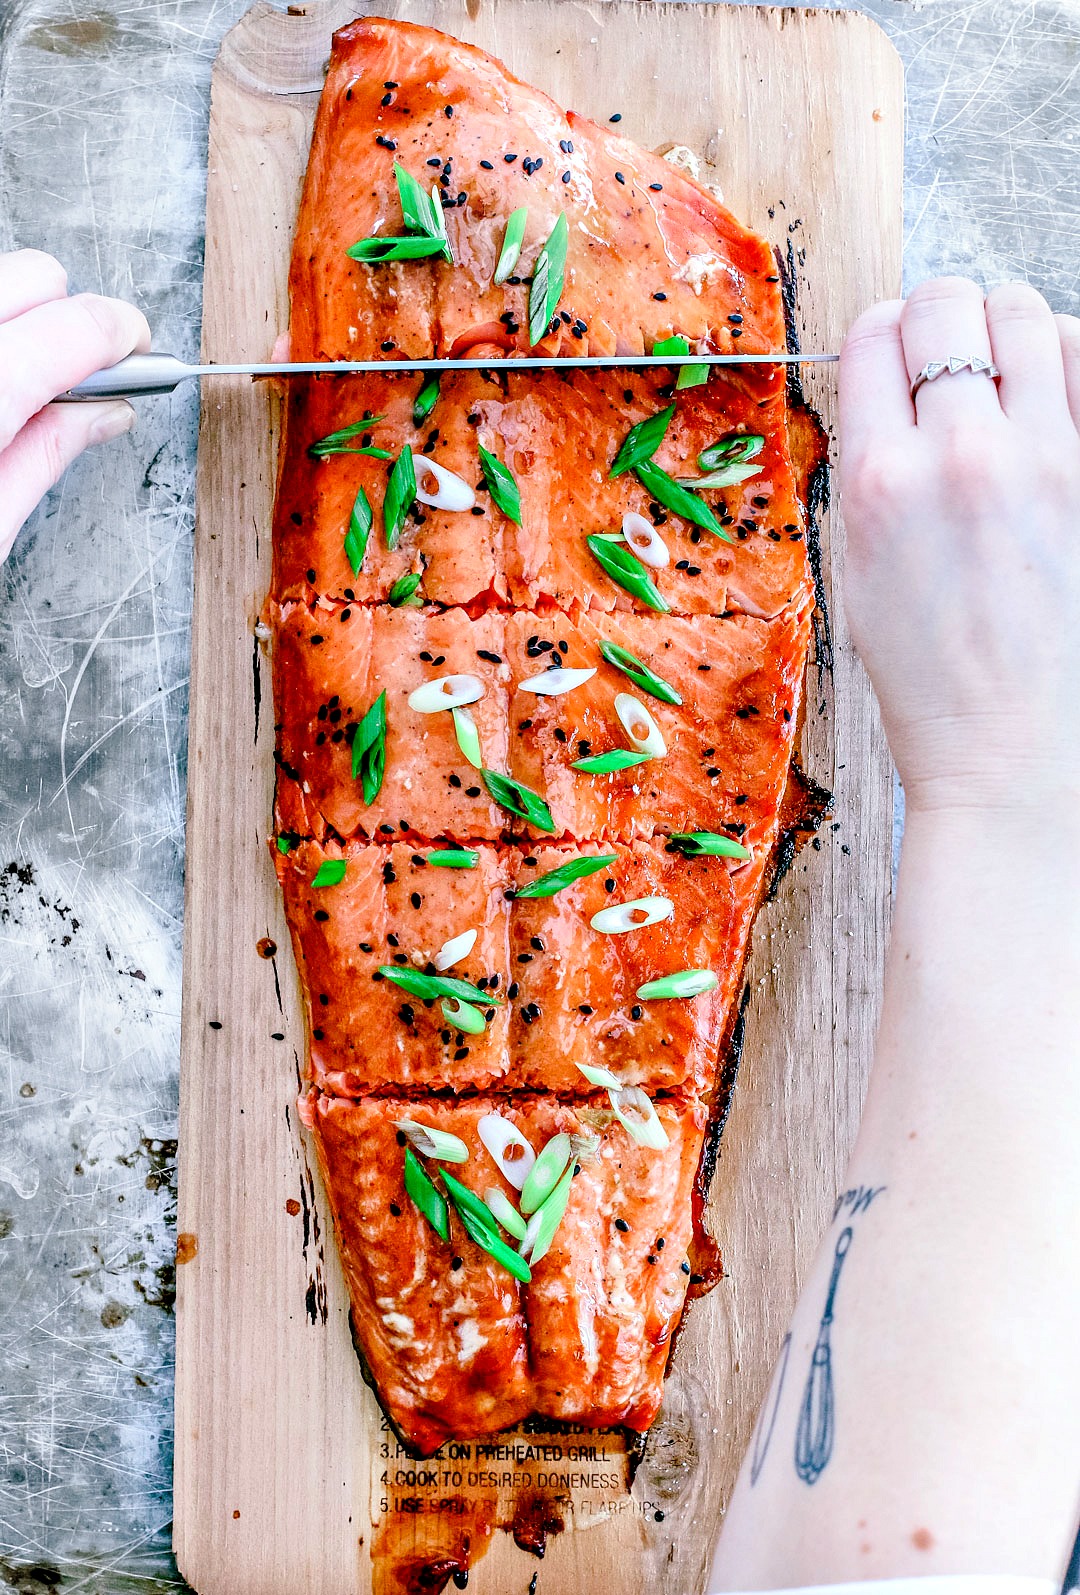 Cedar Plank Salmon With Lime and Sriracha Glaze | Killing Thyme